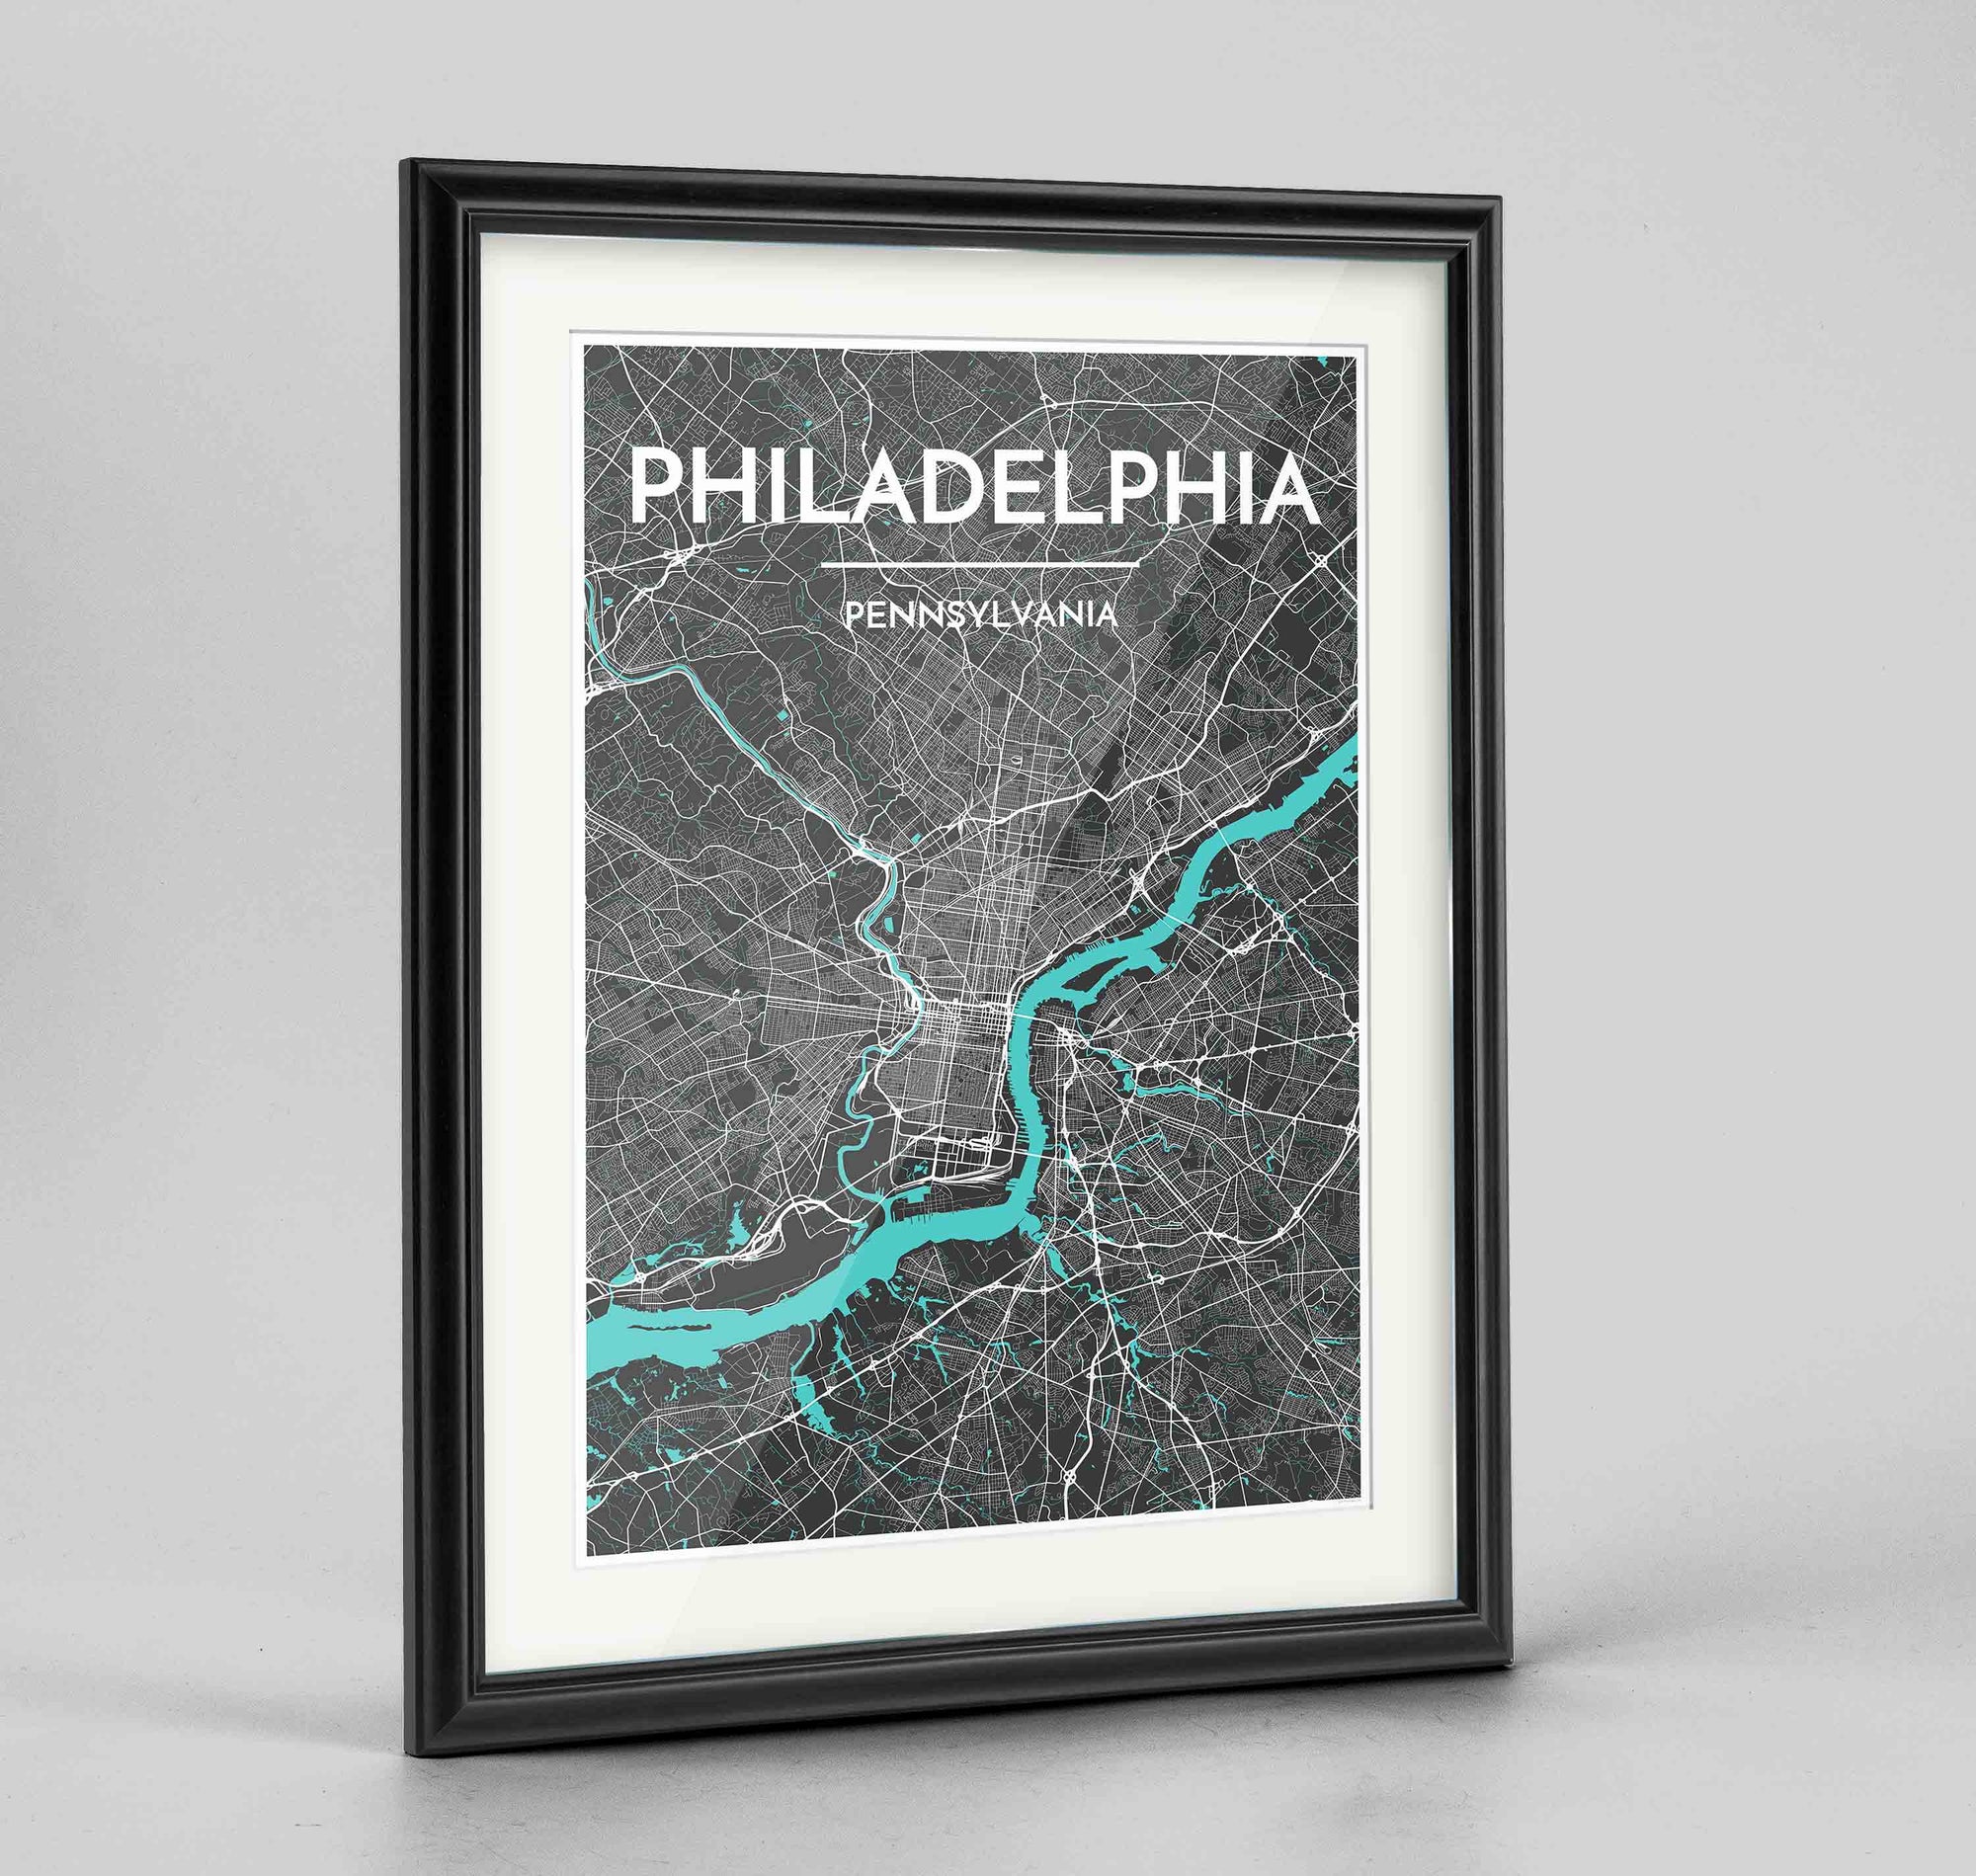 Framed Philadelphia Map Art Print 24x36" Traditional Black frame Point Two Design Group